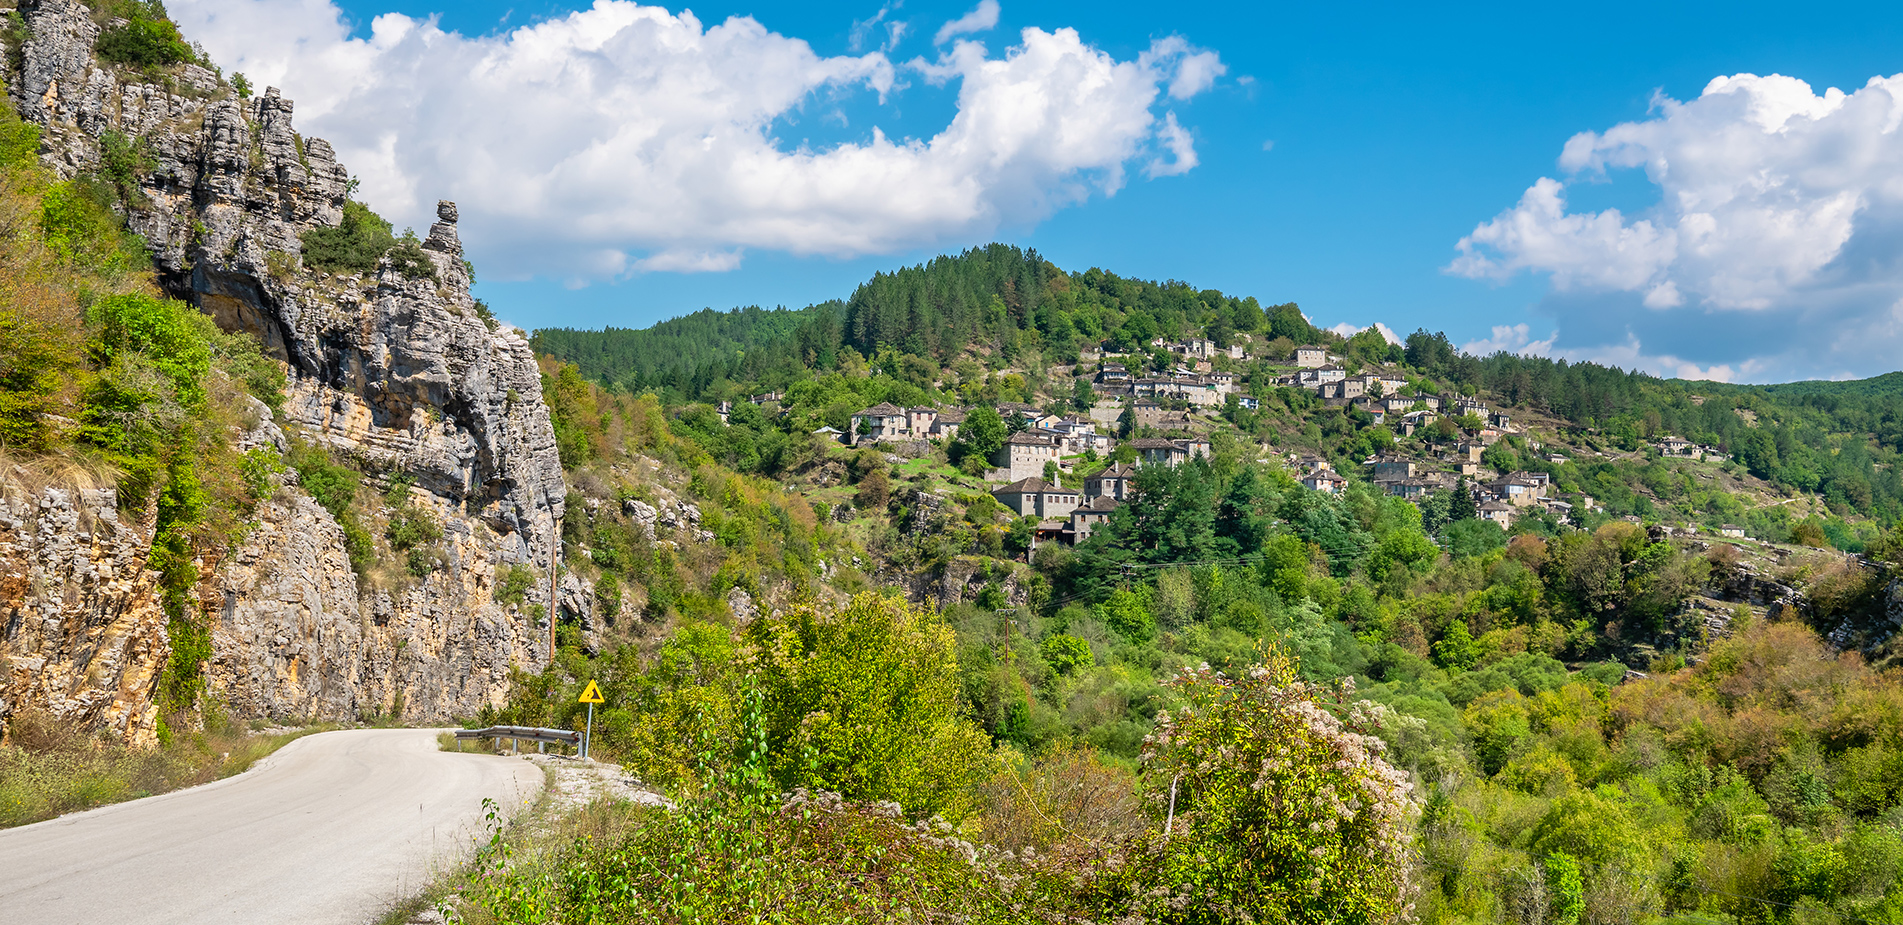 Χωριά της Ελλάδας με περίεργα ονόματα: Πού οφείλουν την ονομασία τους